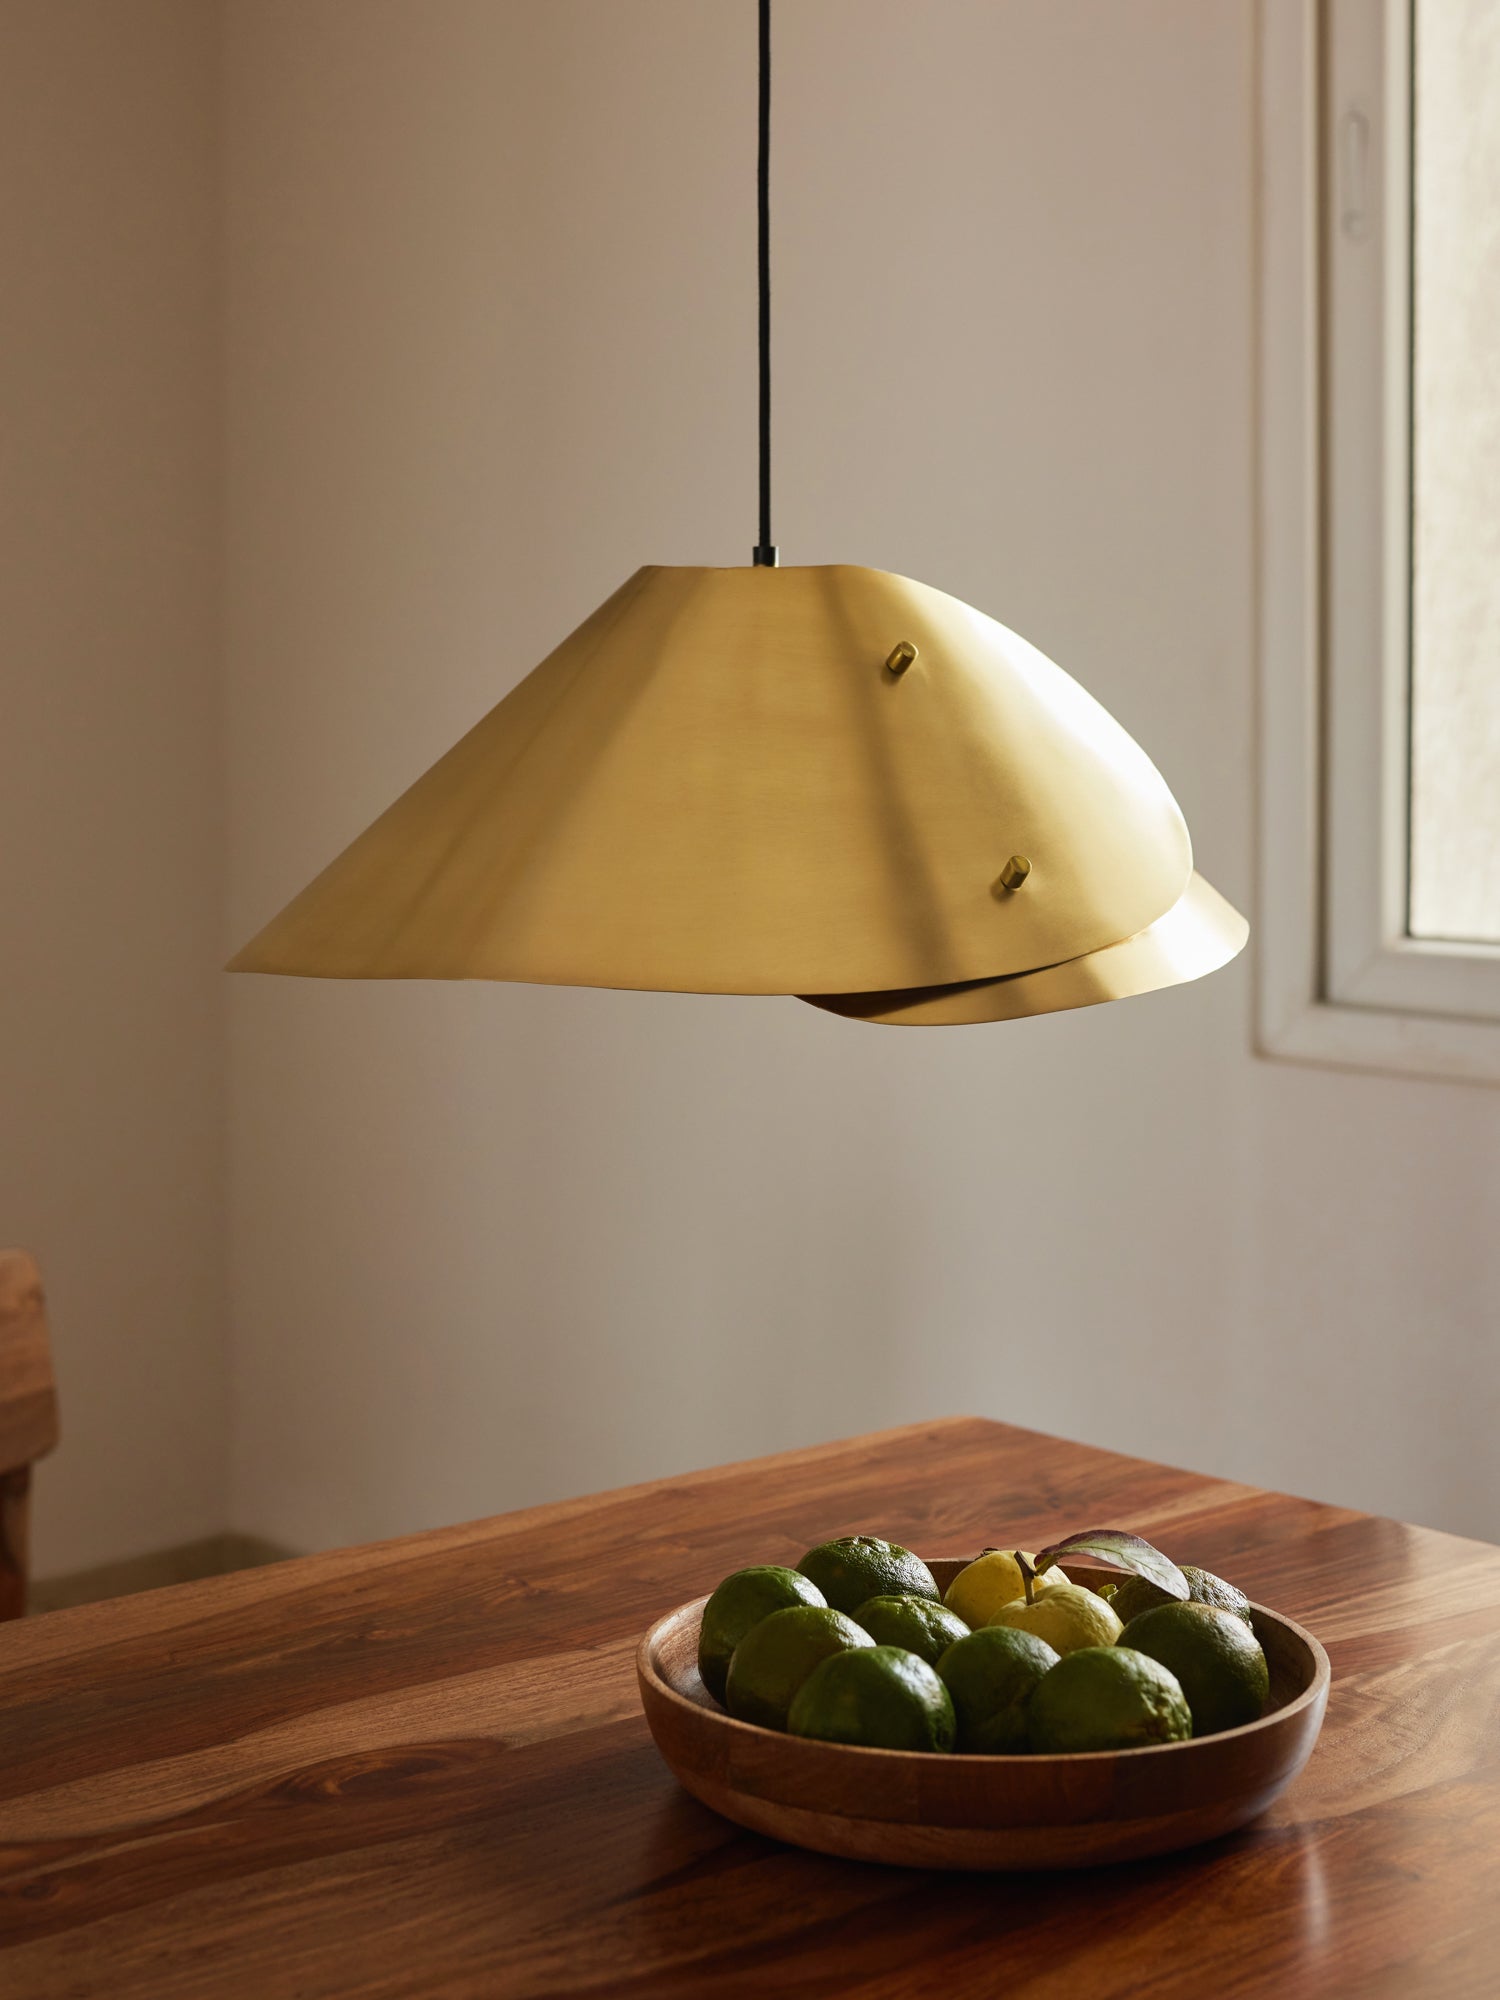 Brass pendant lamp for living room